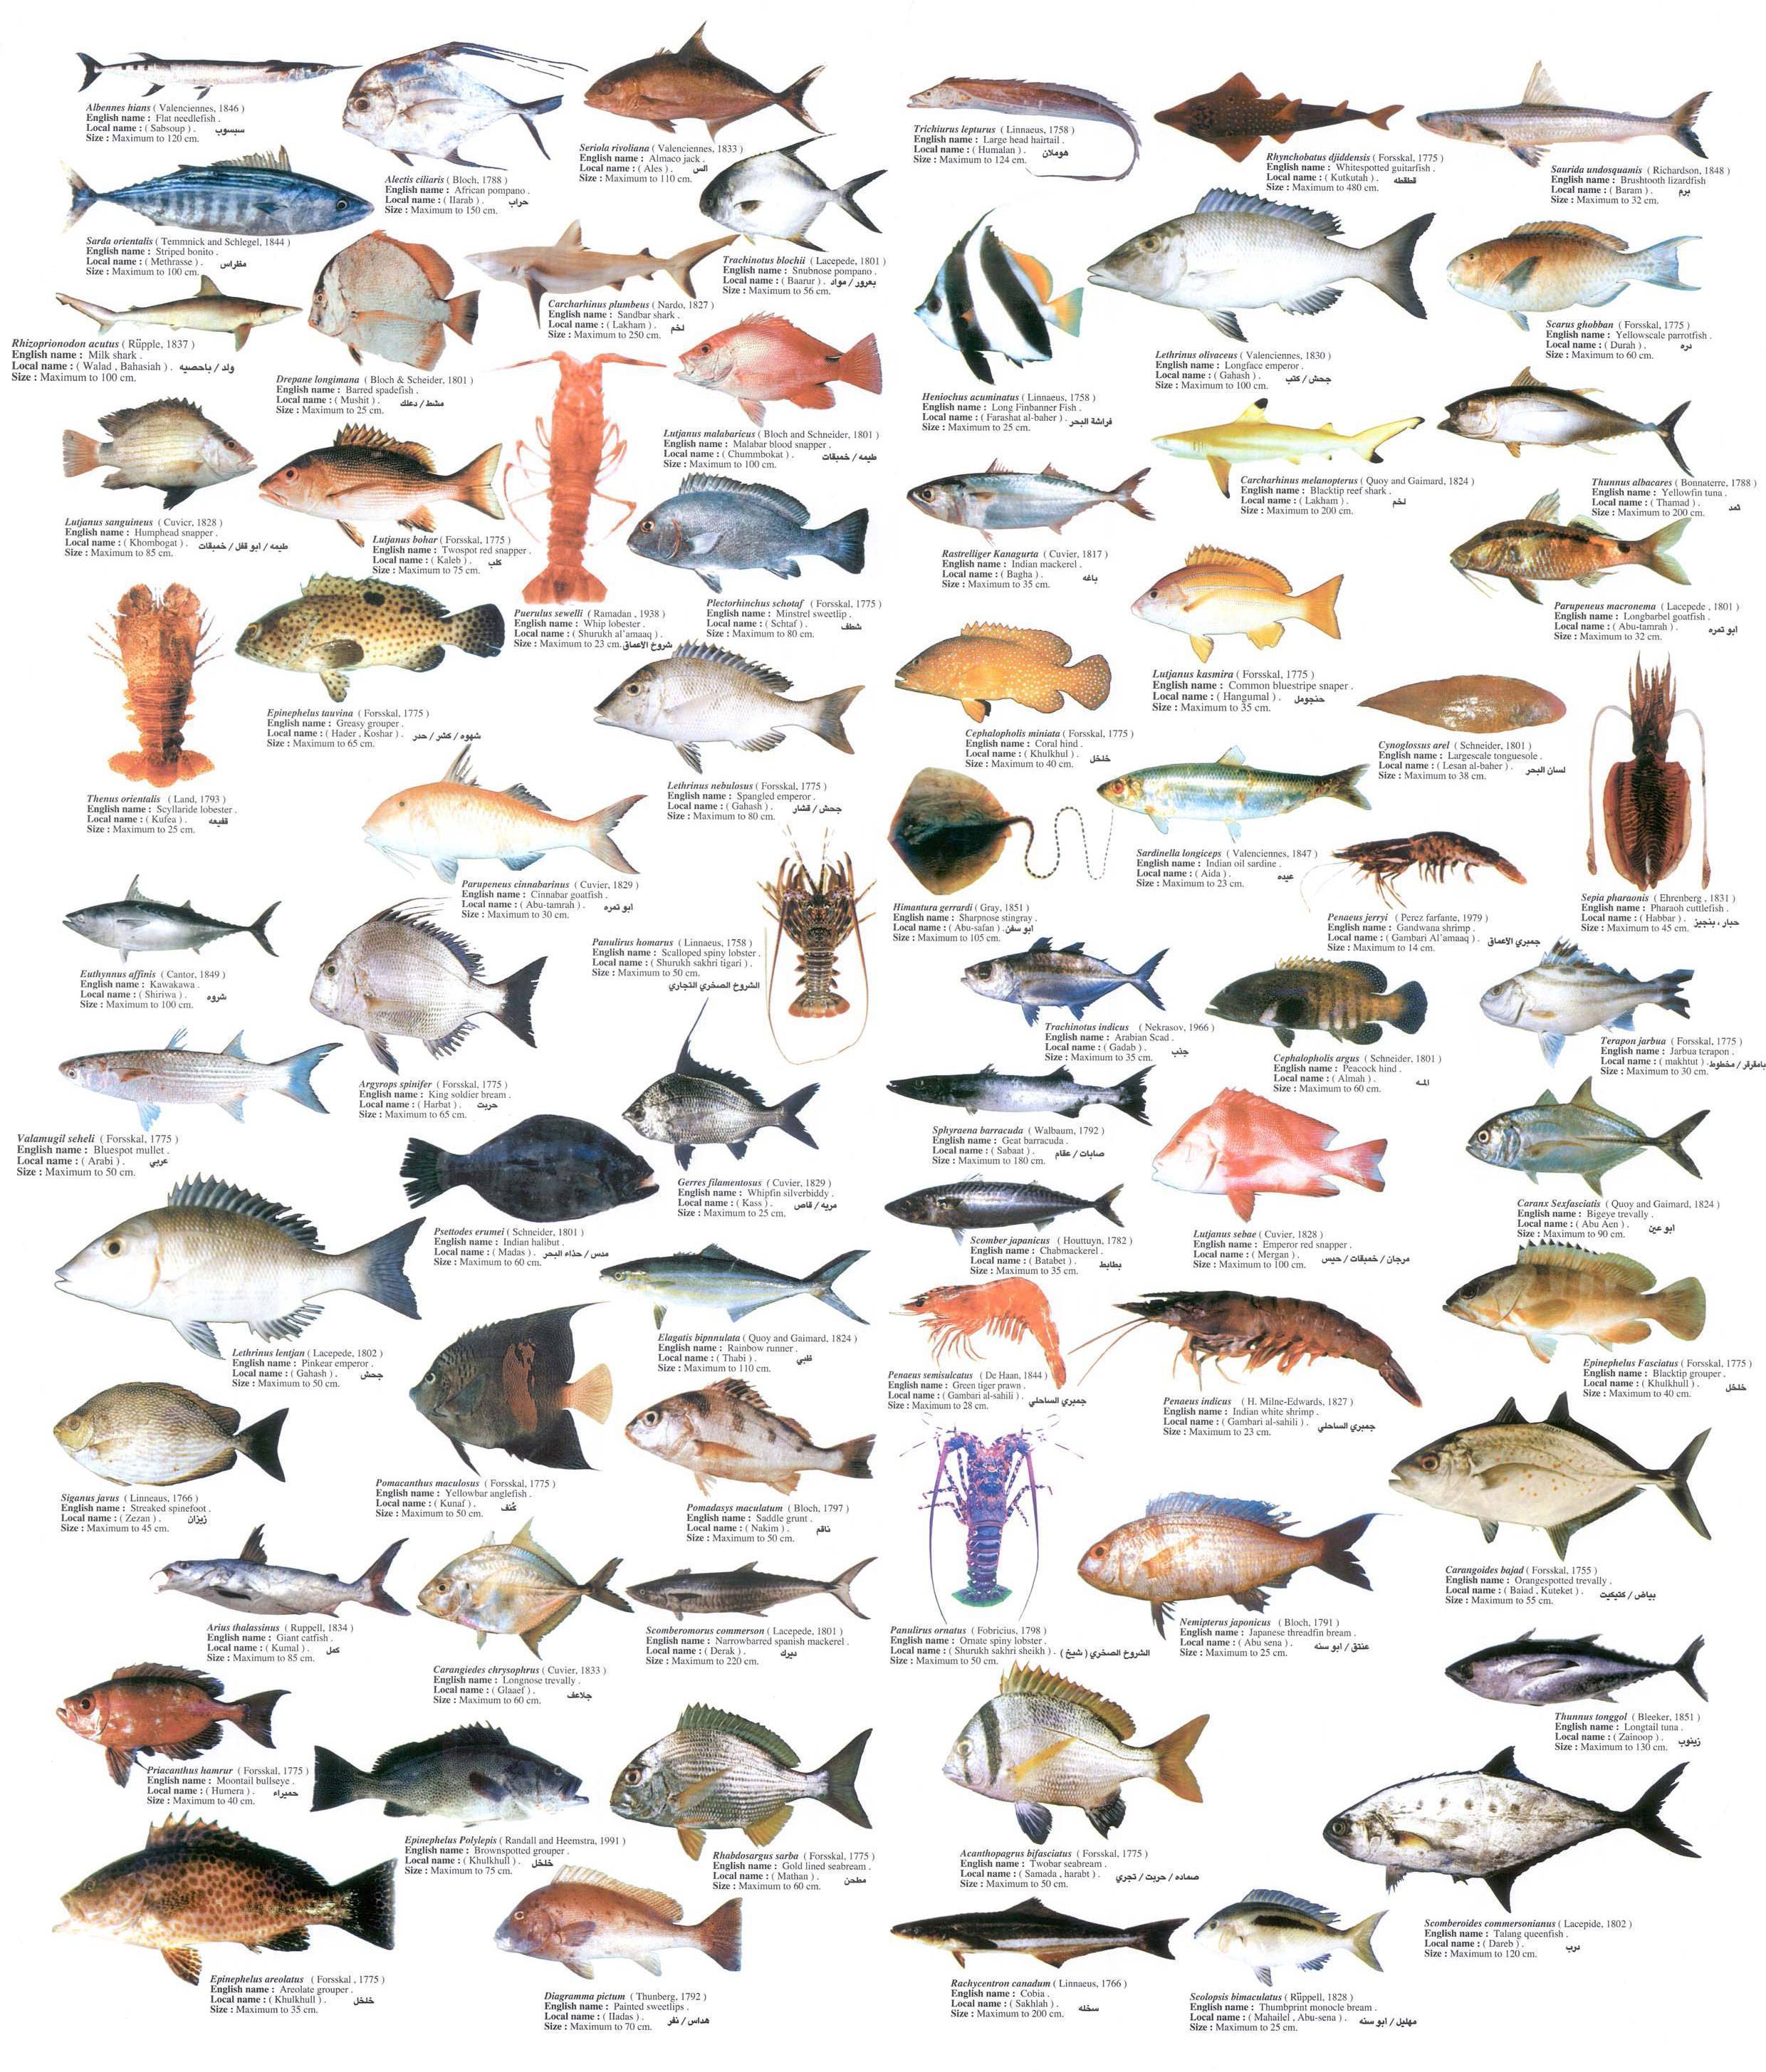 Нежирная рыба — список всех сортов для диетического питания